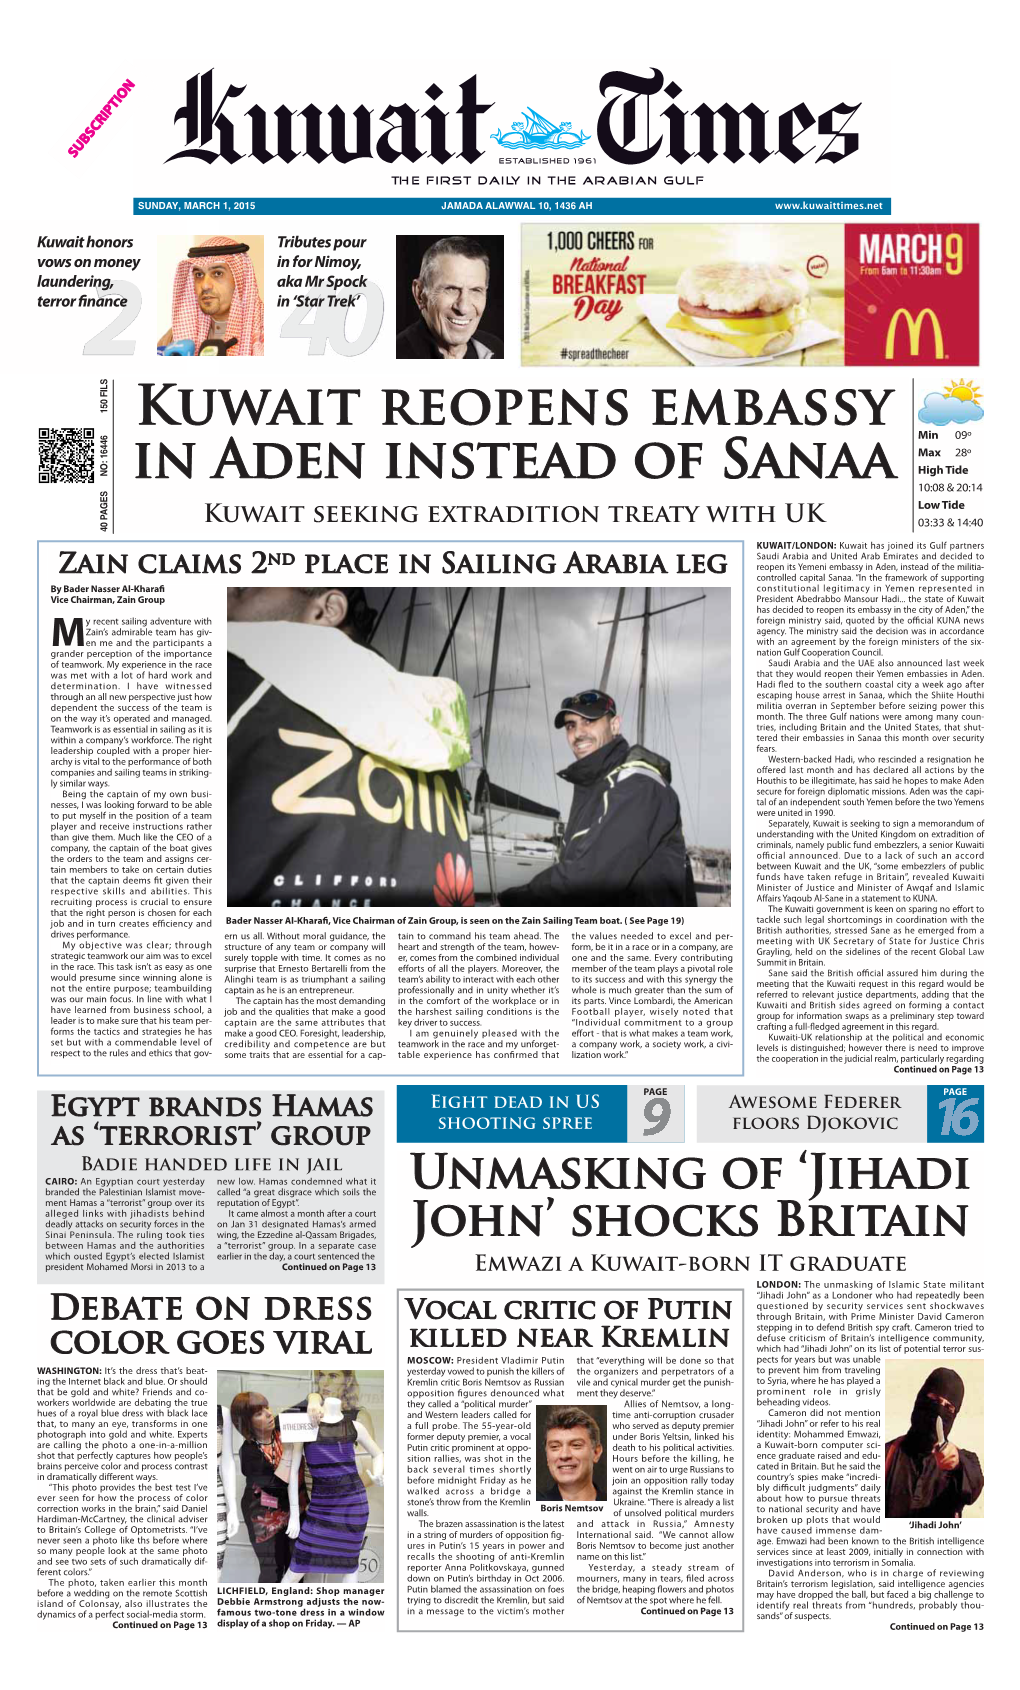 Kuwait Reopens Embassy in Aden Instead of Sanaa